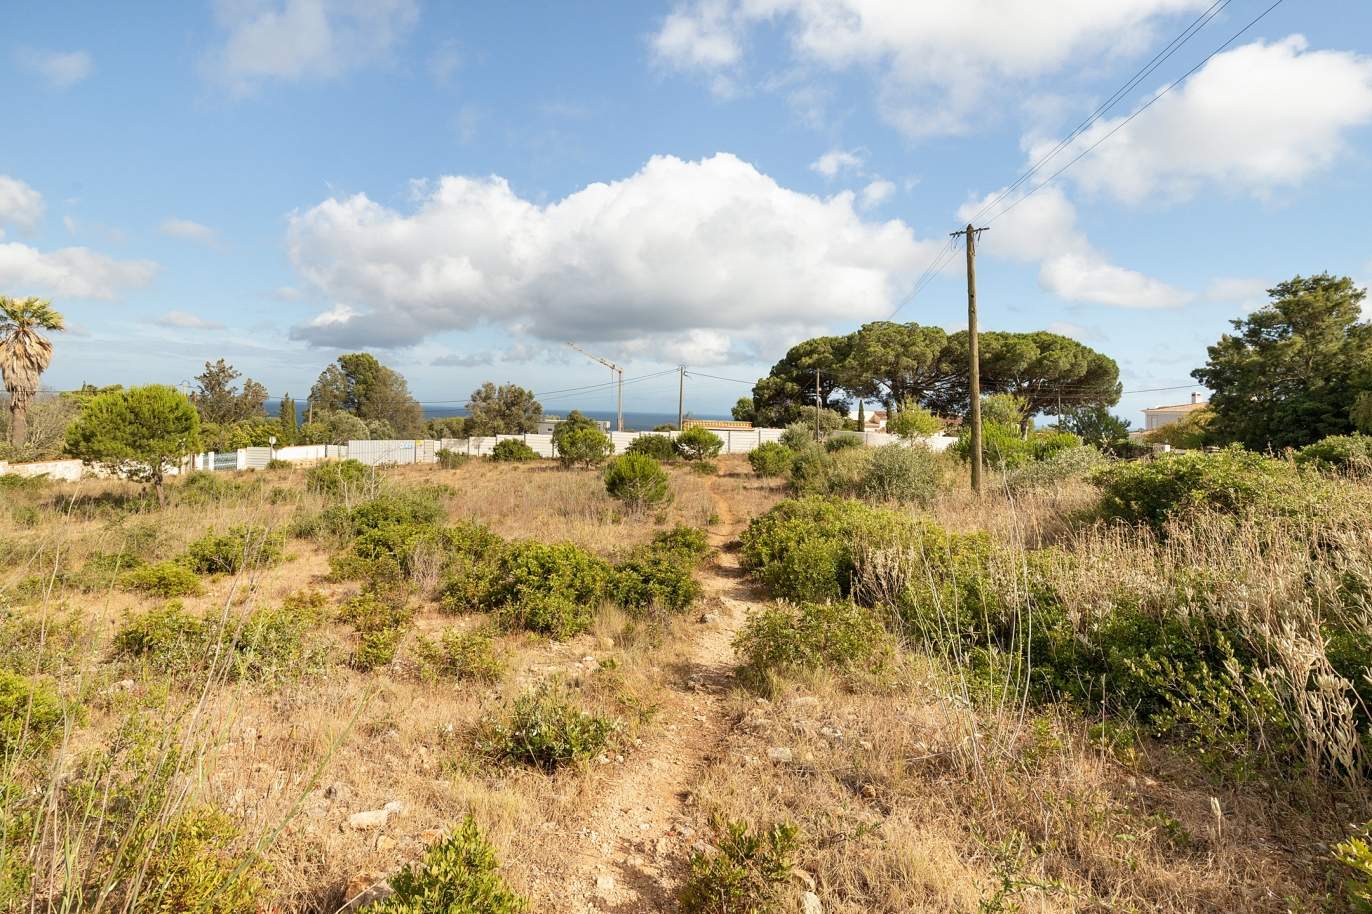 Parcela de terreno, con posibilidad de construcción, Praia da Luz, Lagos, Algarve_172814